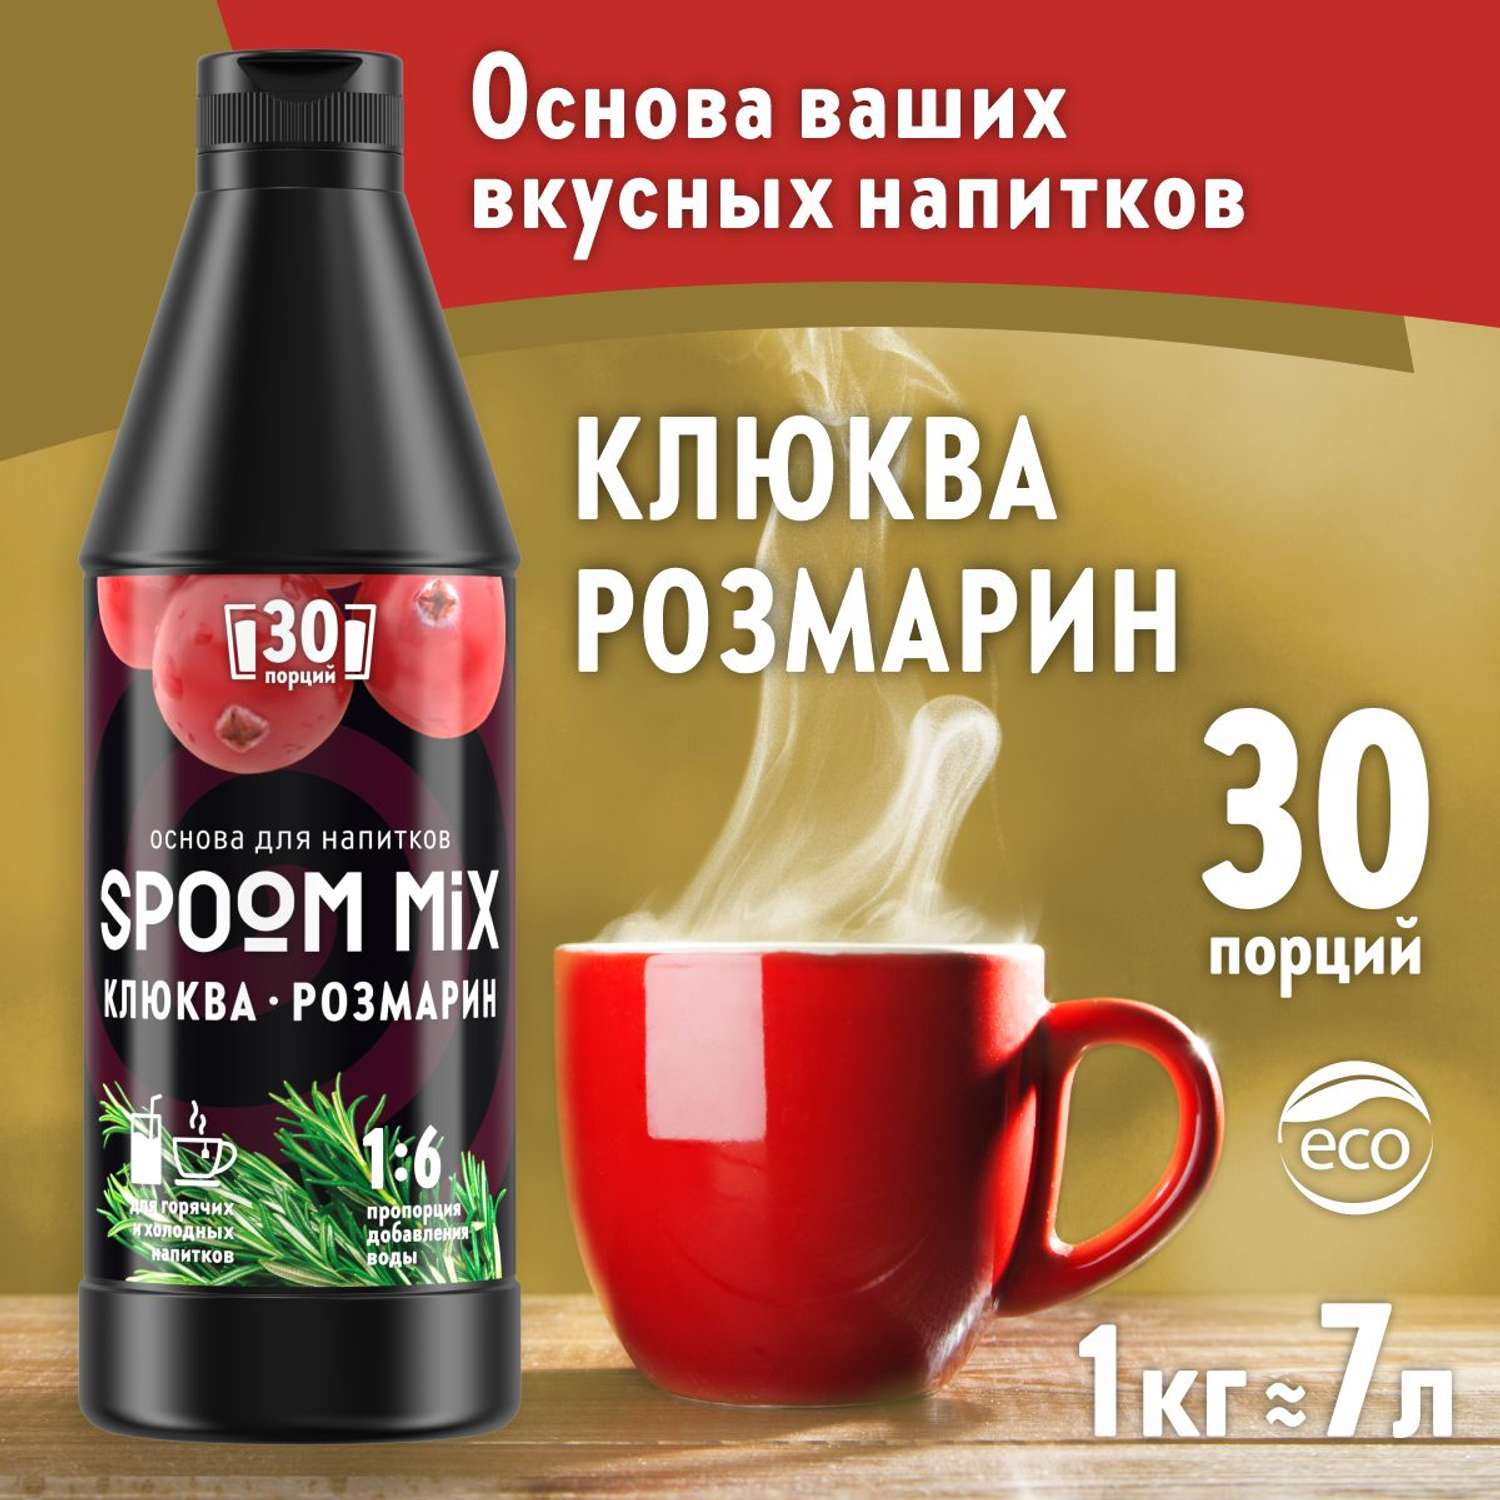 Основа для напитков SPOOM MIX Клюква розмарин 1 кг - фото 1